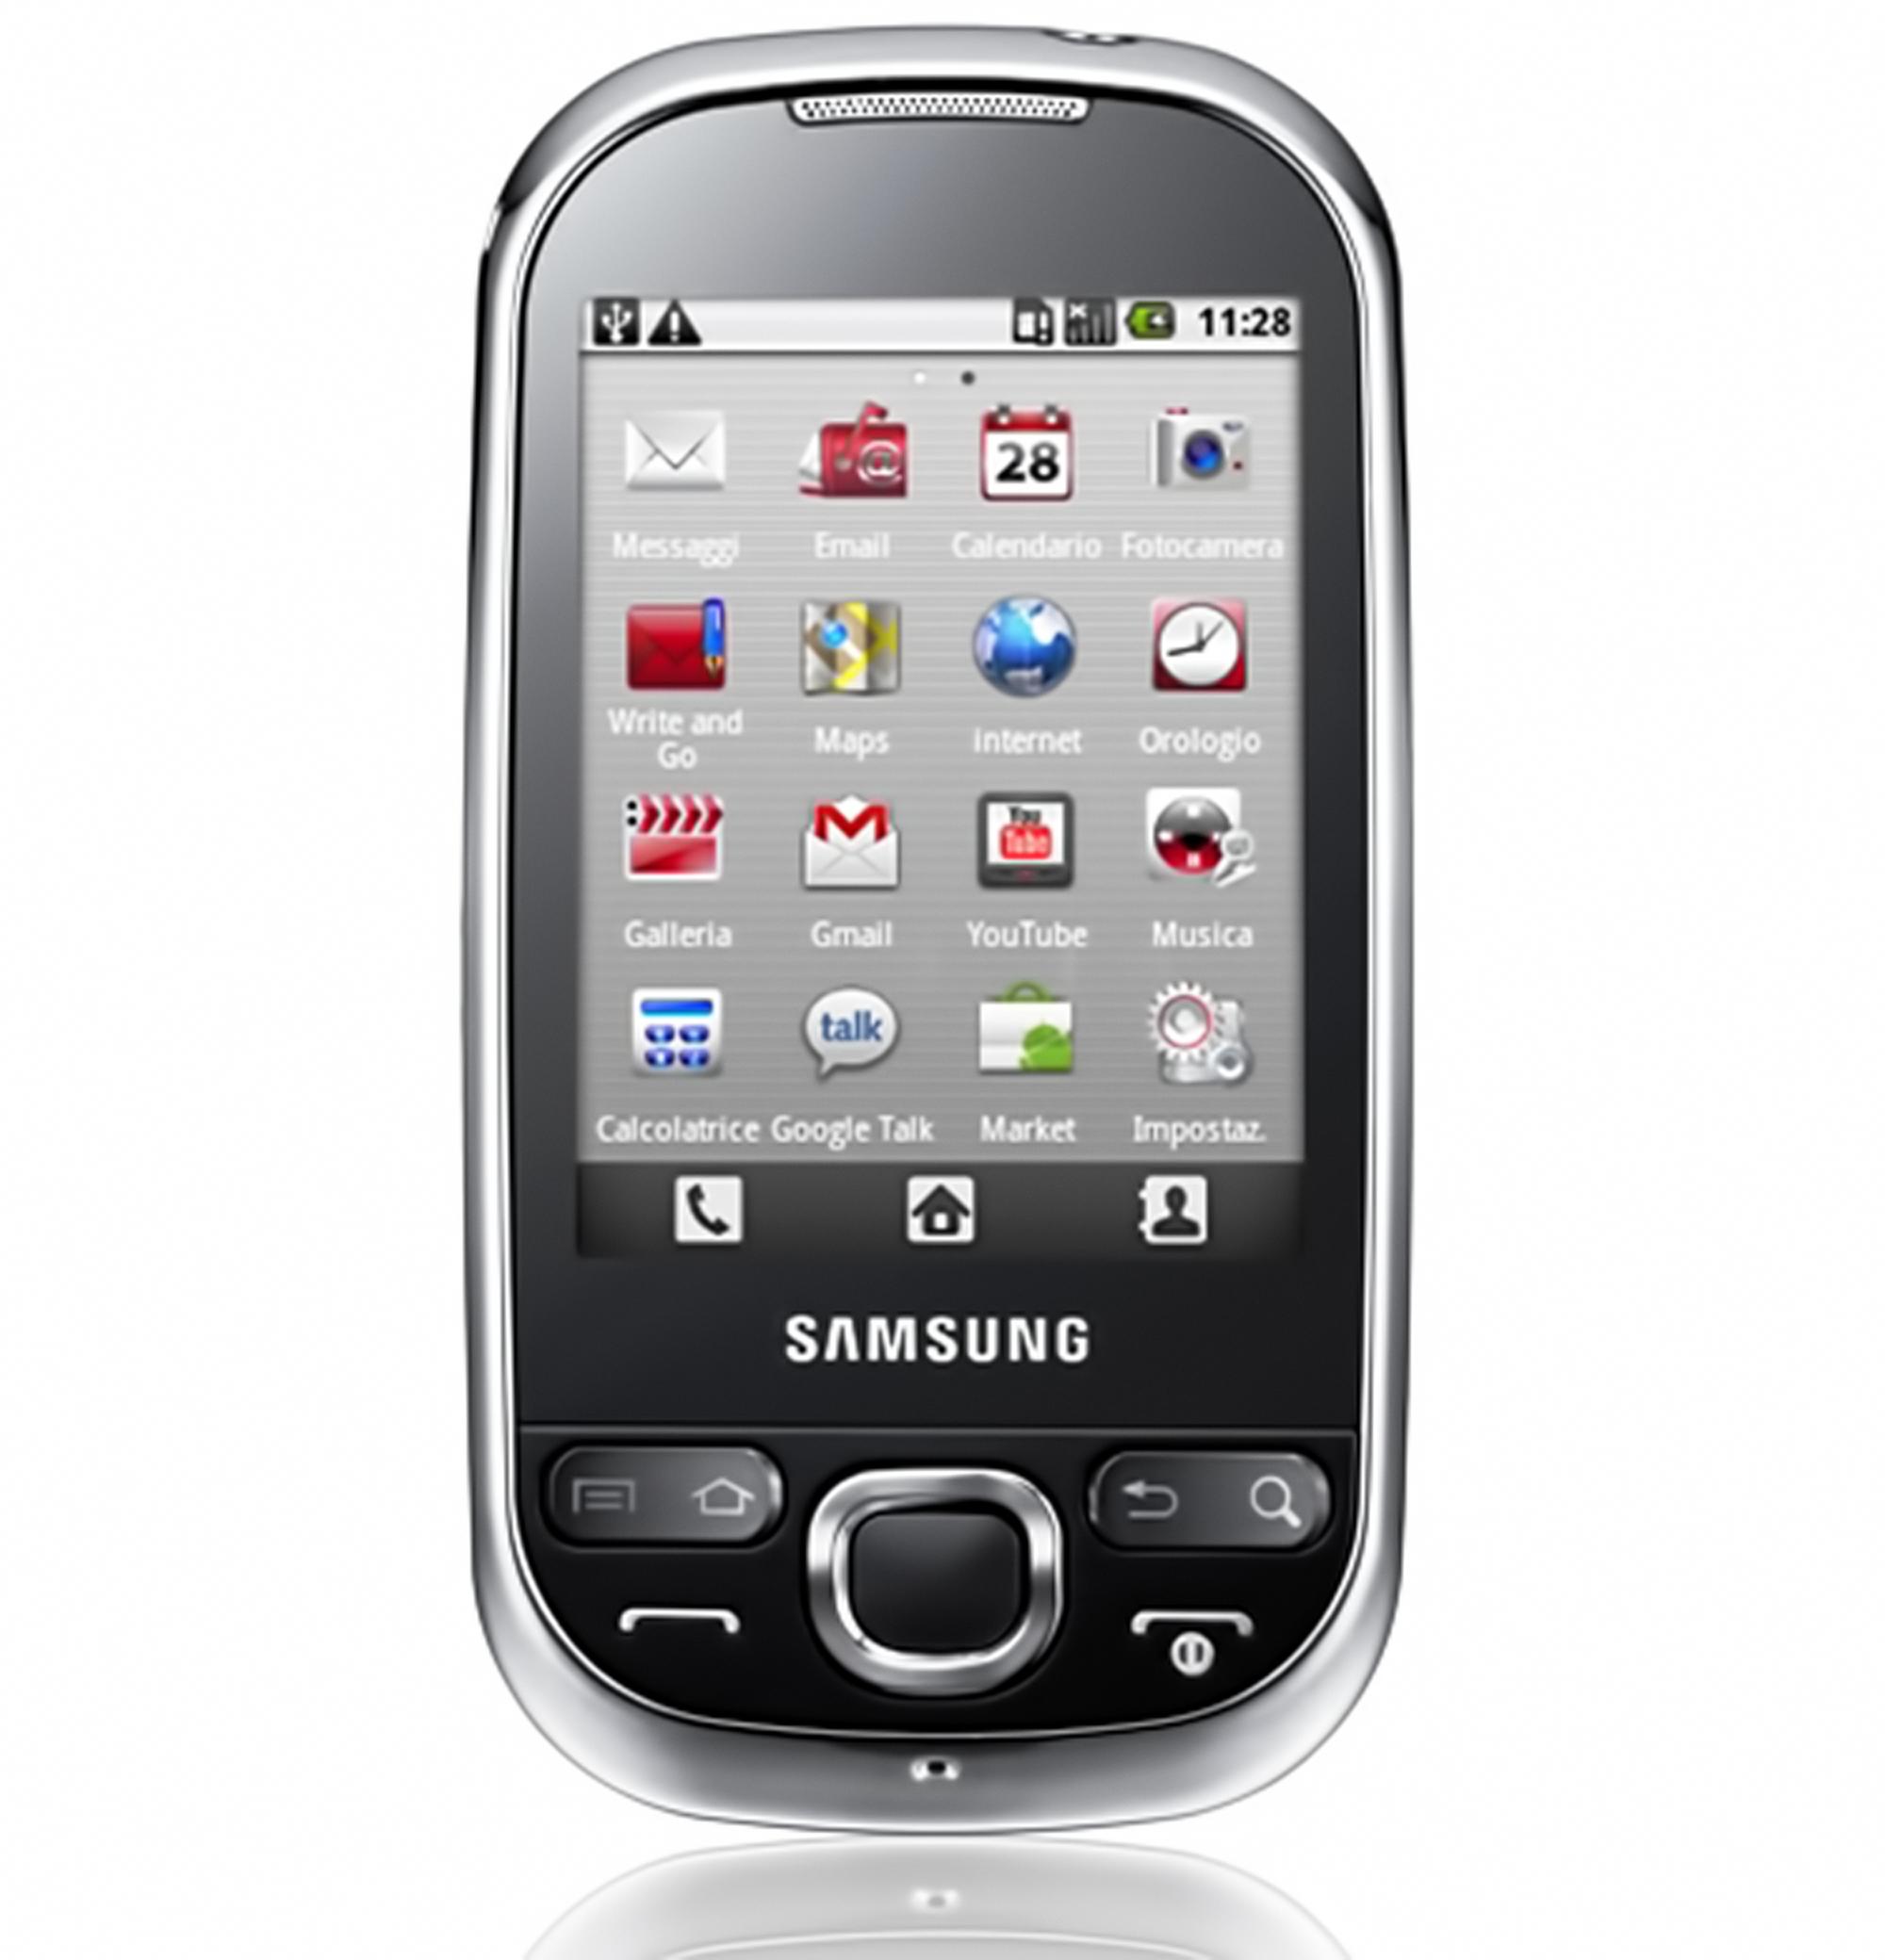   Samsung I5503 Galaxy 5